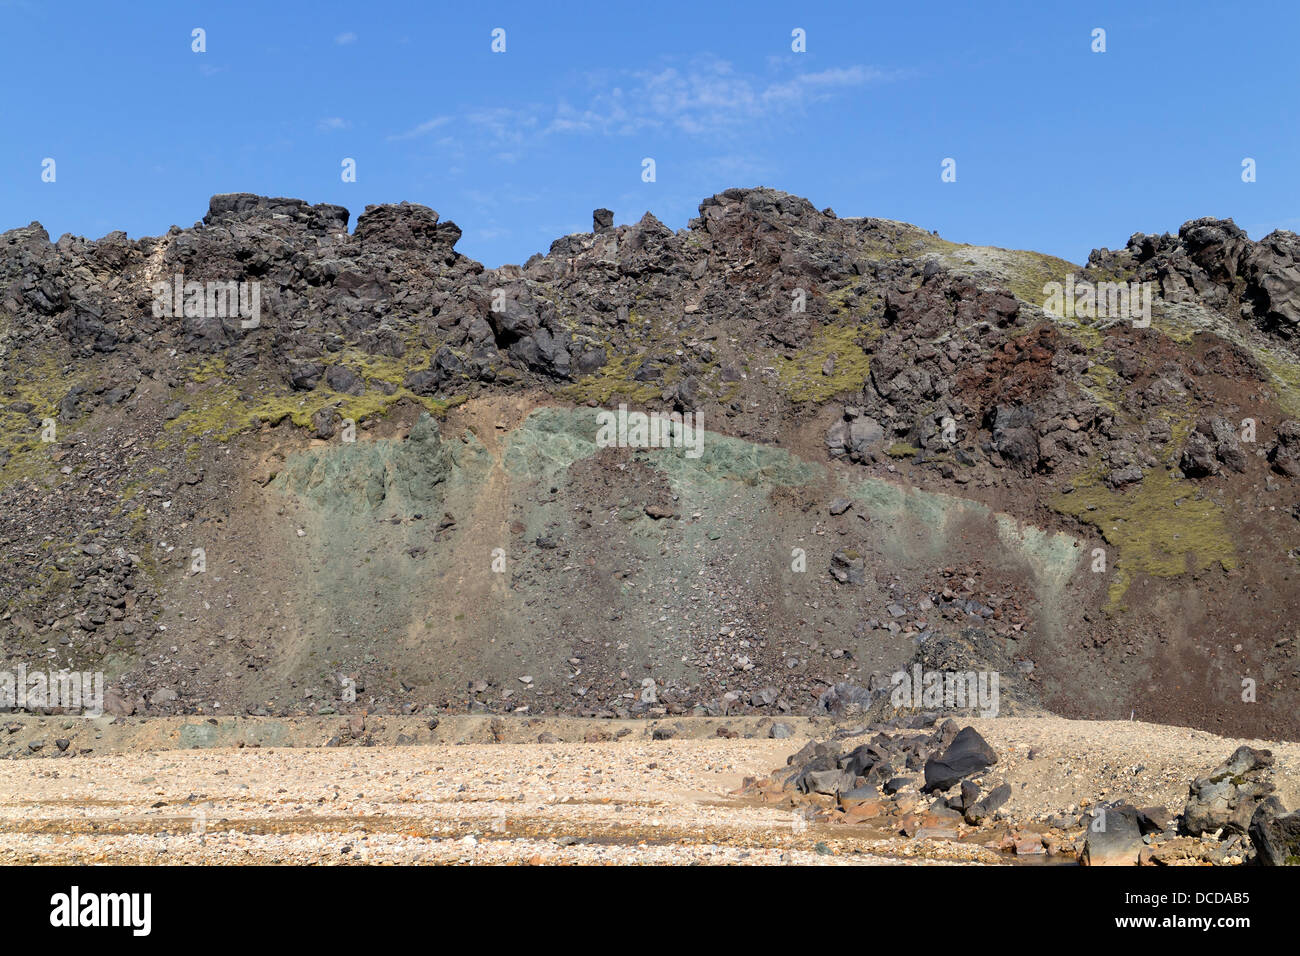 Un exemple de la géologie stratifié sur le champ de lave Laugahraun créé au cours de deux éruptions volcaniques de Landmannalaugar Islande Banque D'Images